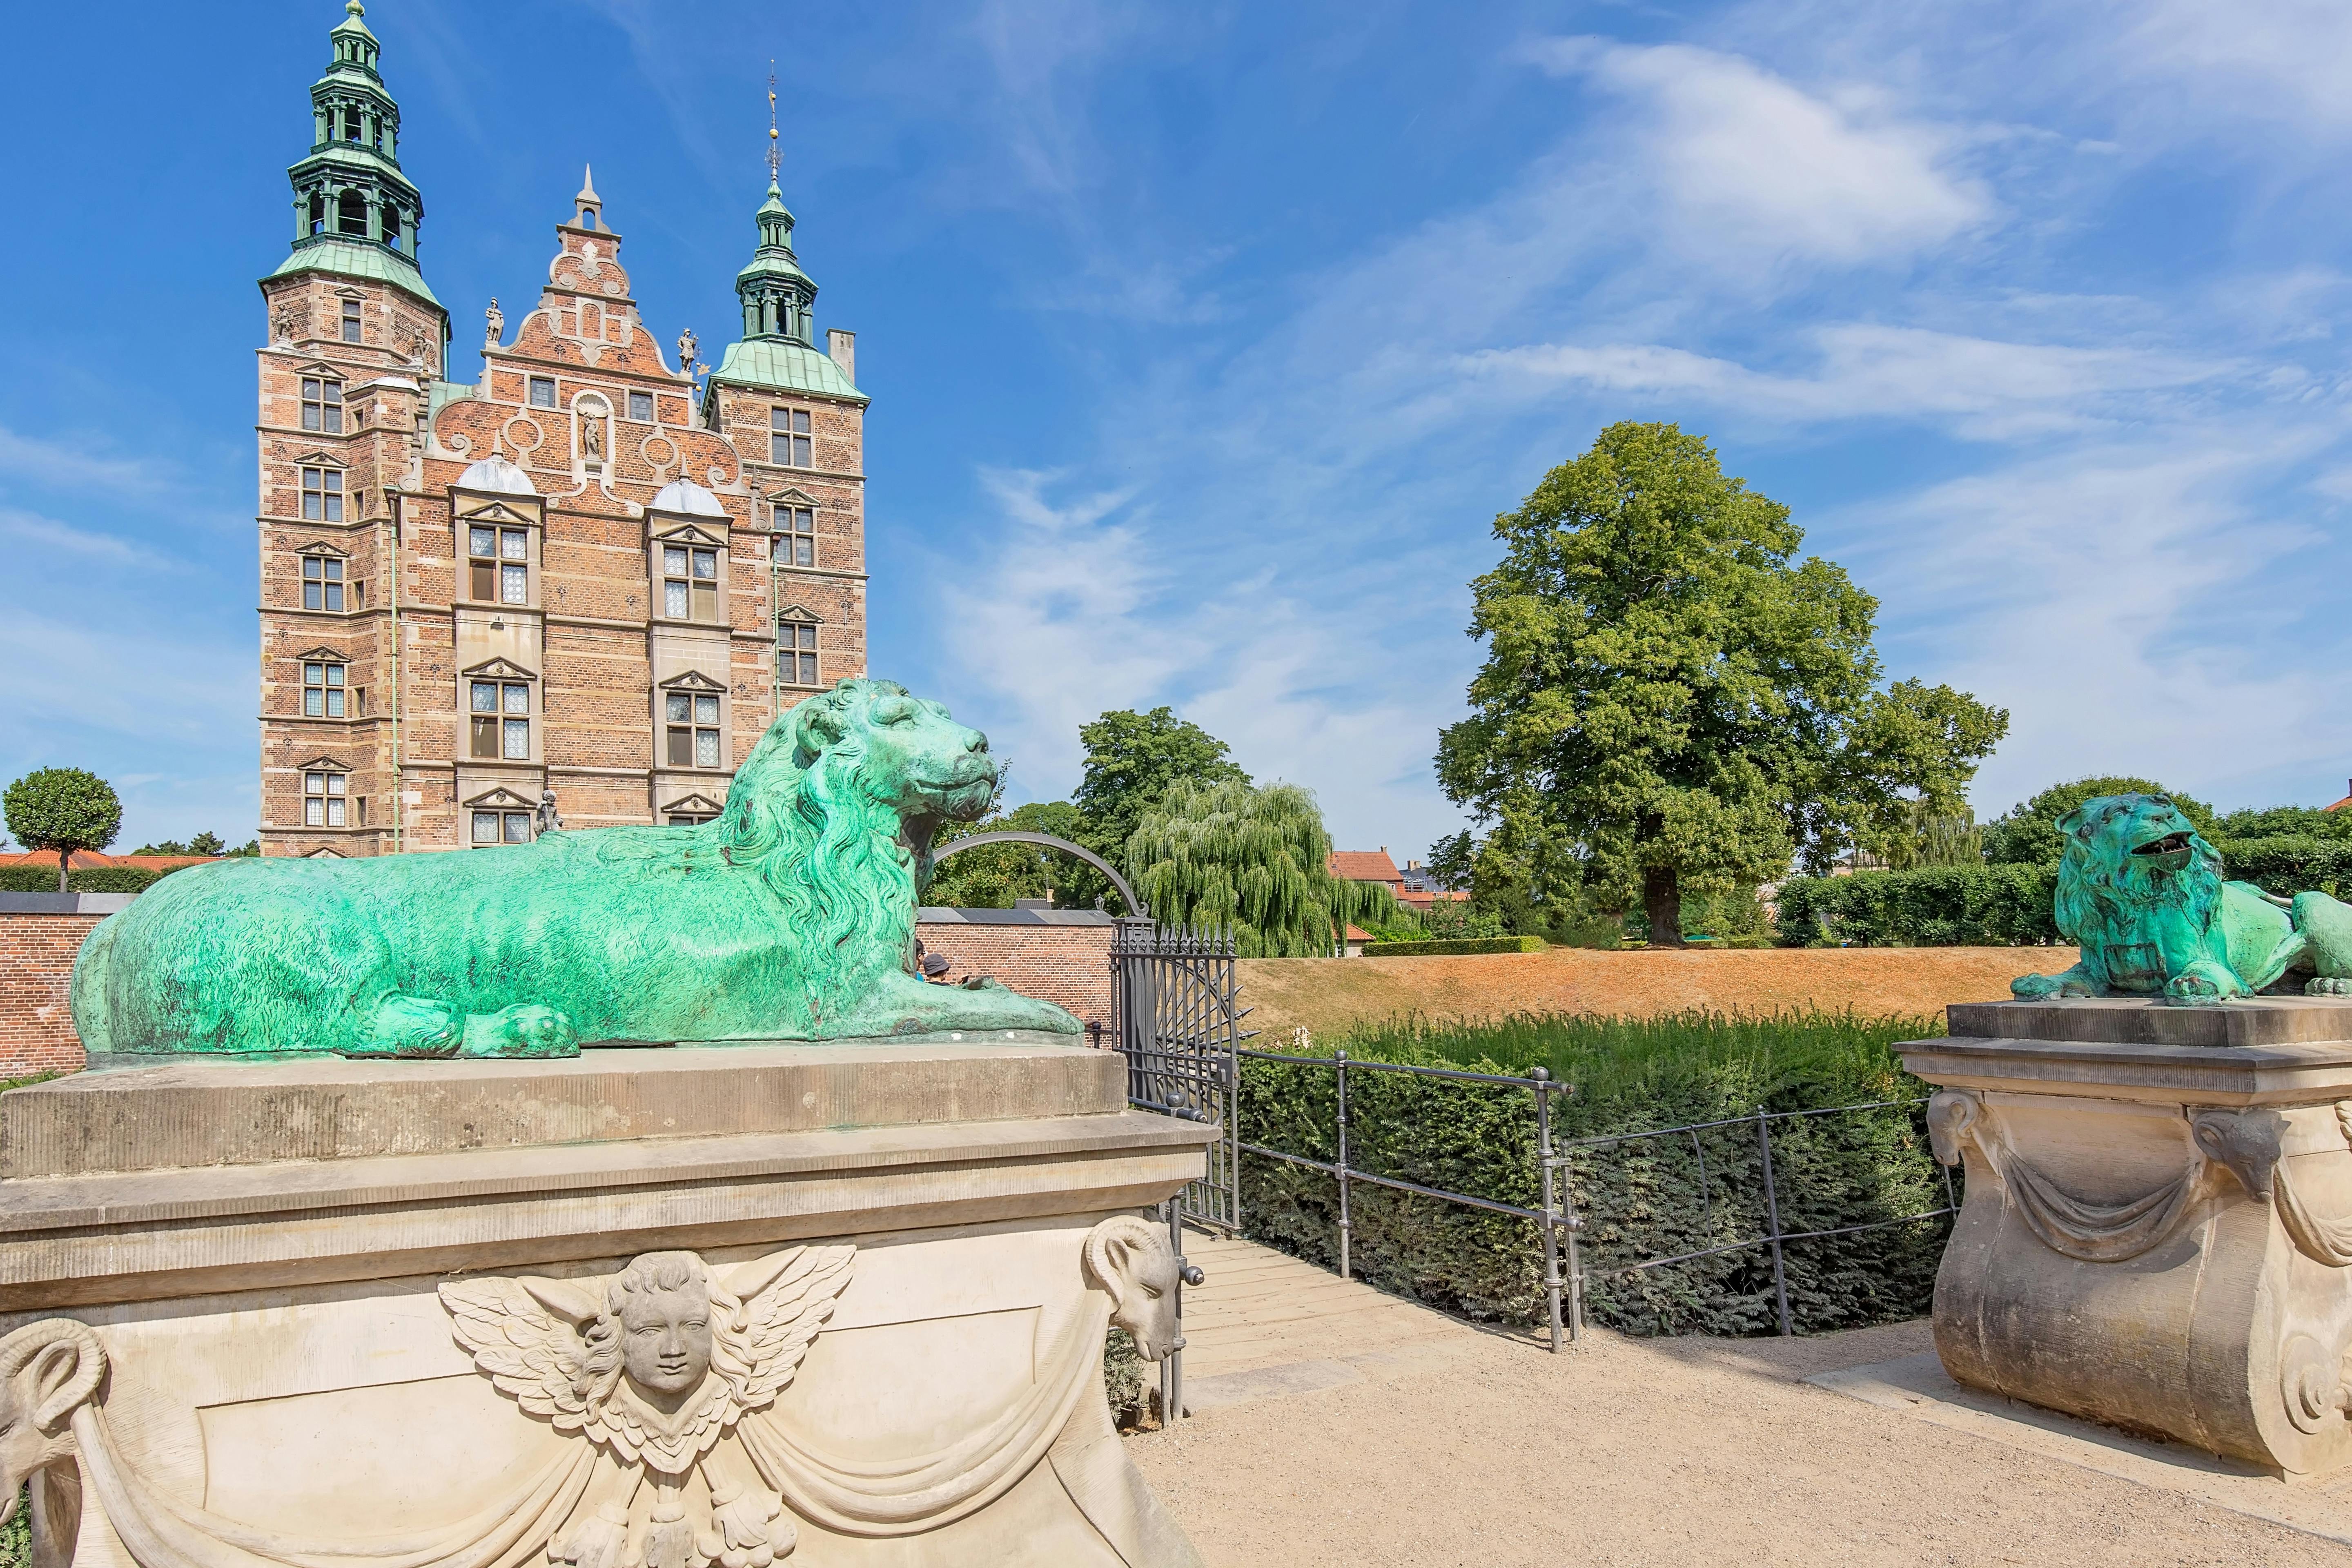 Rosenborg castel.jpeg